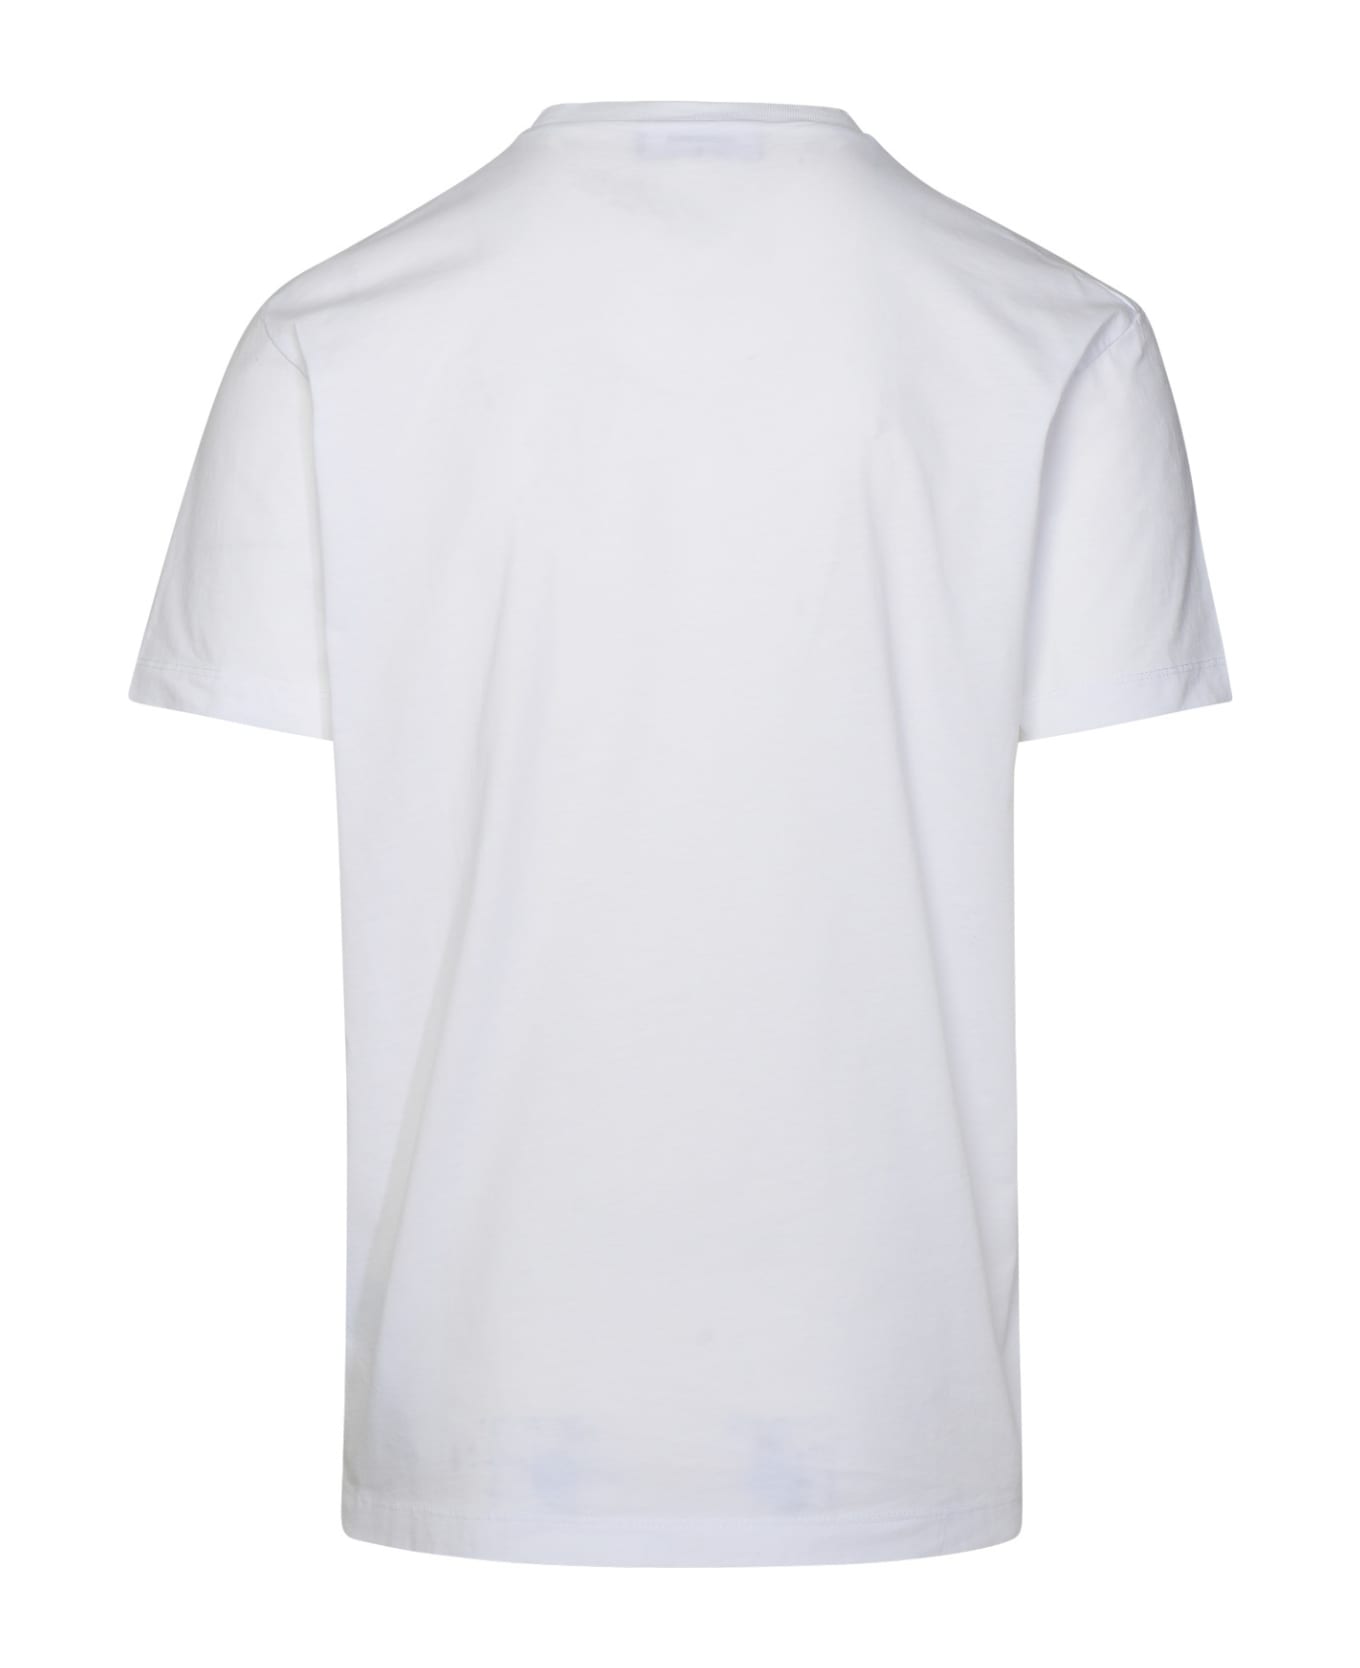 Dsquared2 White Cotton T-shirt - White